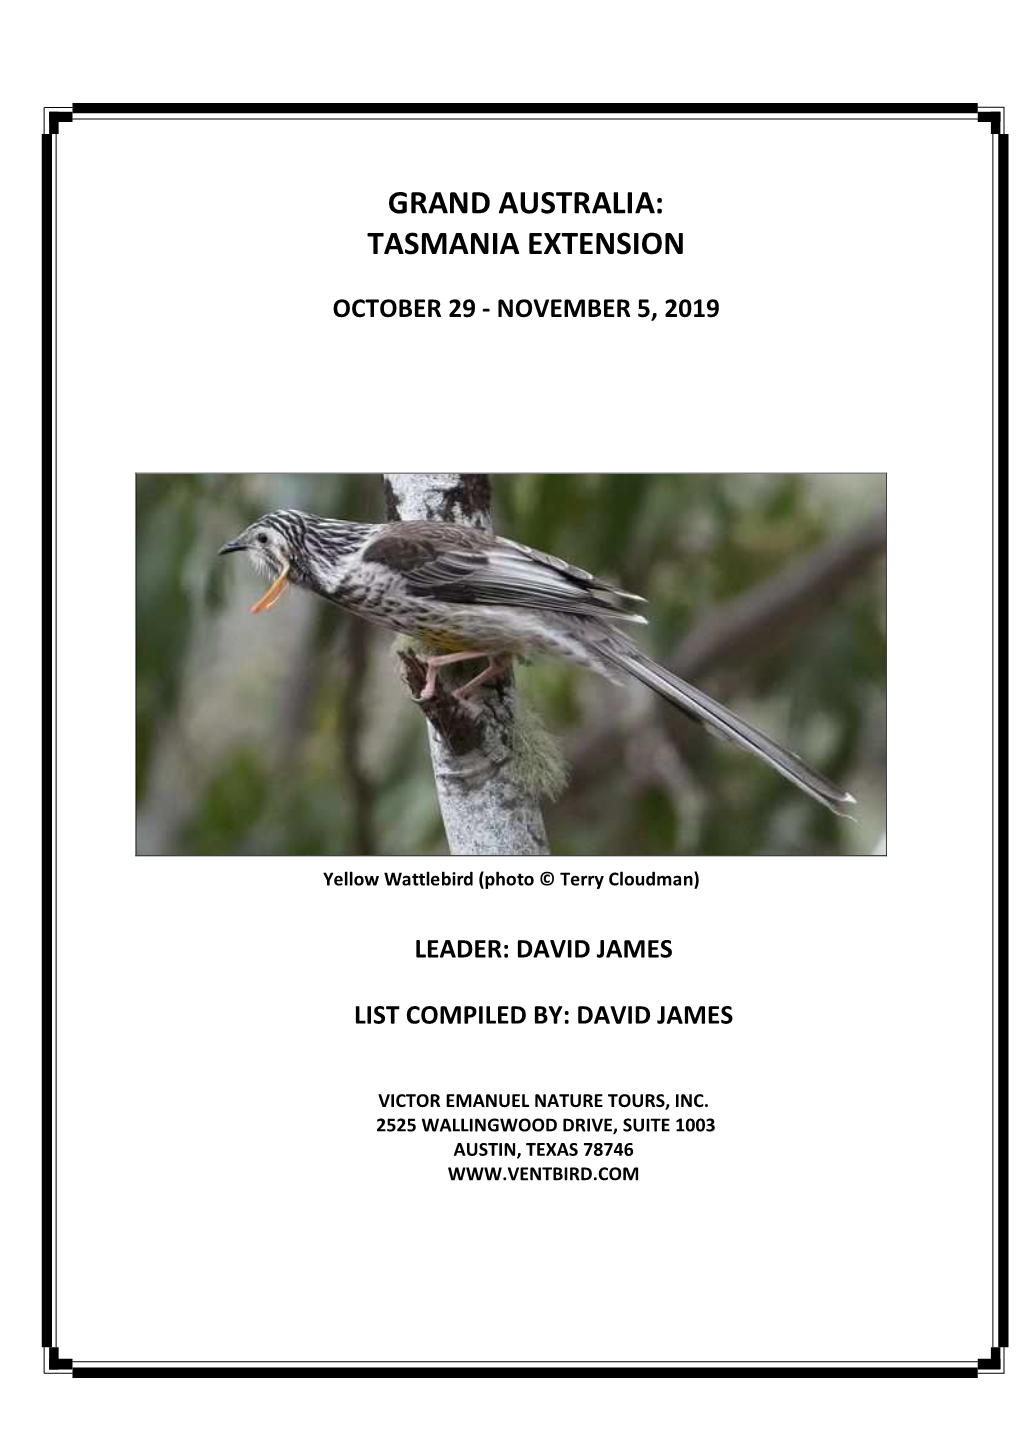 Tasmania Extension Trip Report 916AU1B O 2019